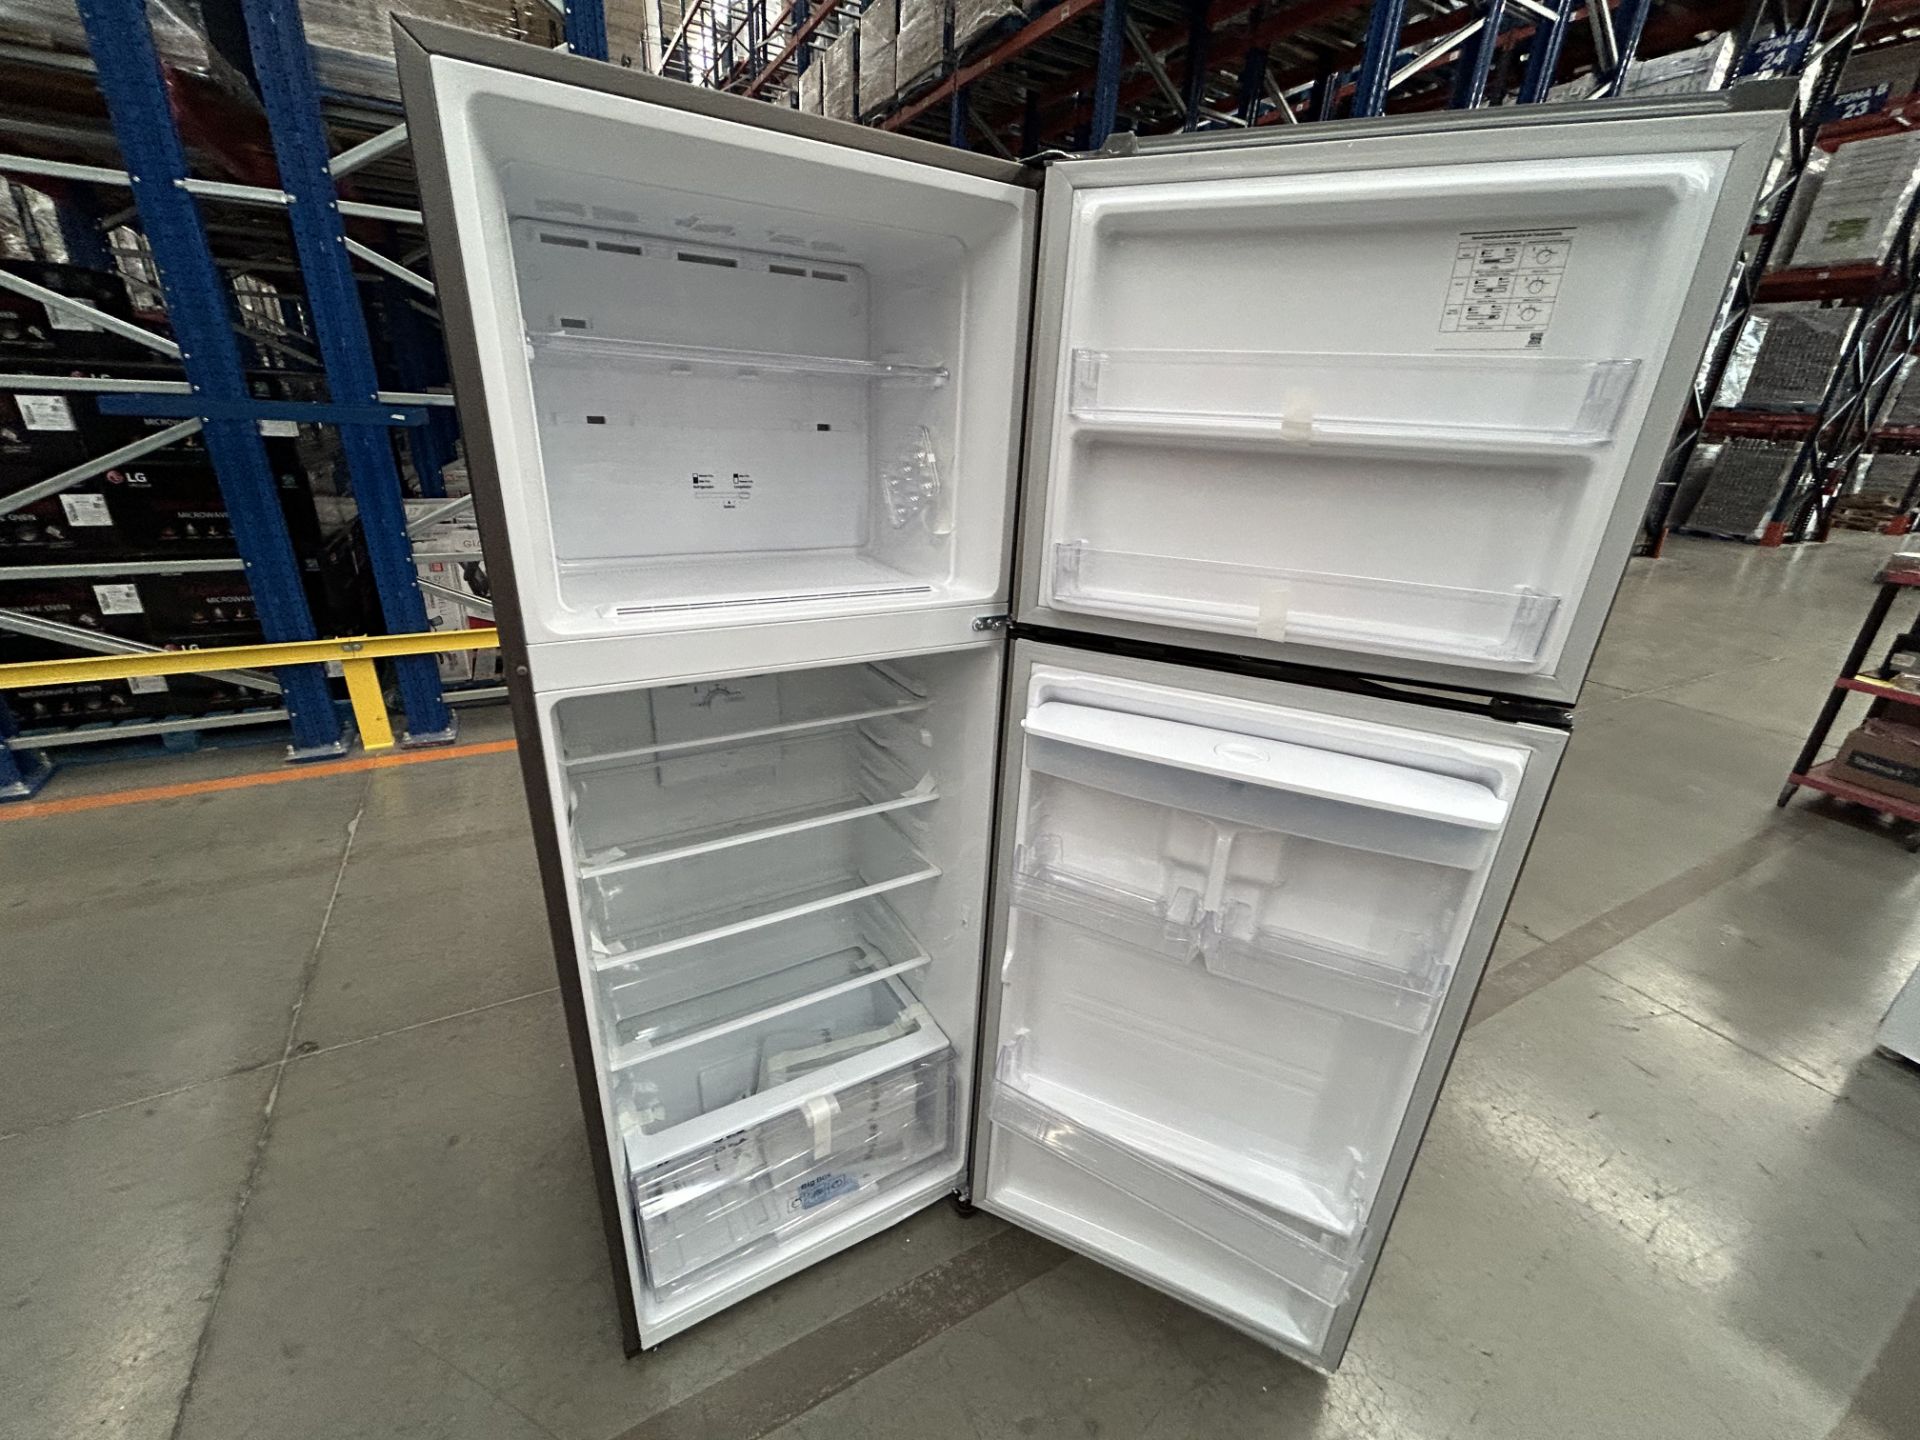 Lote de 2 refrigeradores contiene: 1 Refrigerador con dispensador de agua Marca SAMSUNG, Modelo RT3 - Image 5 of 6